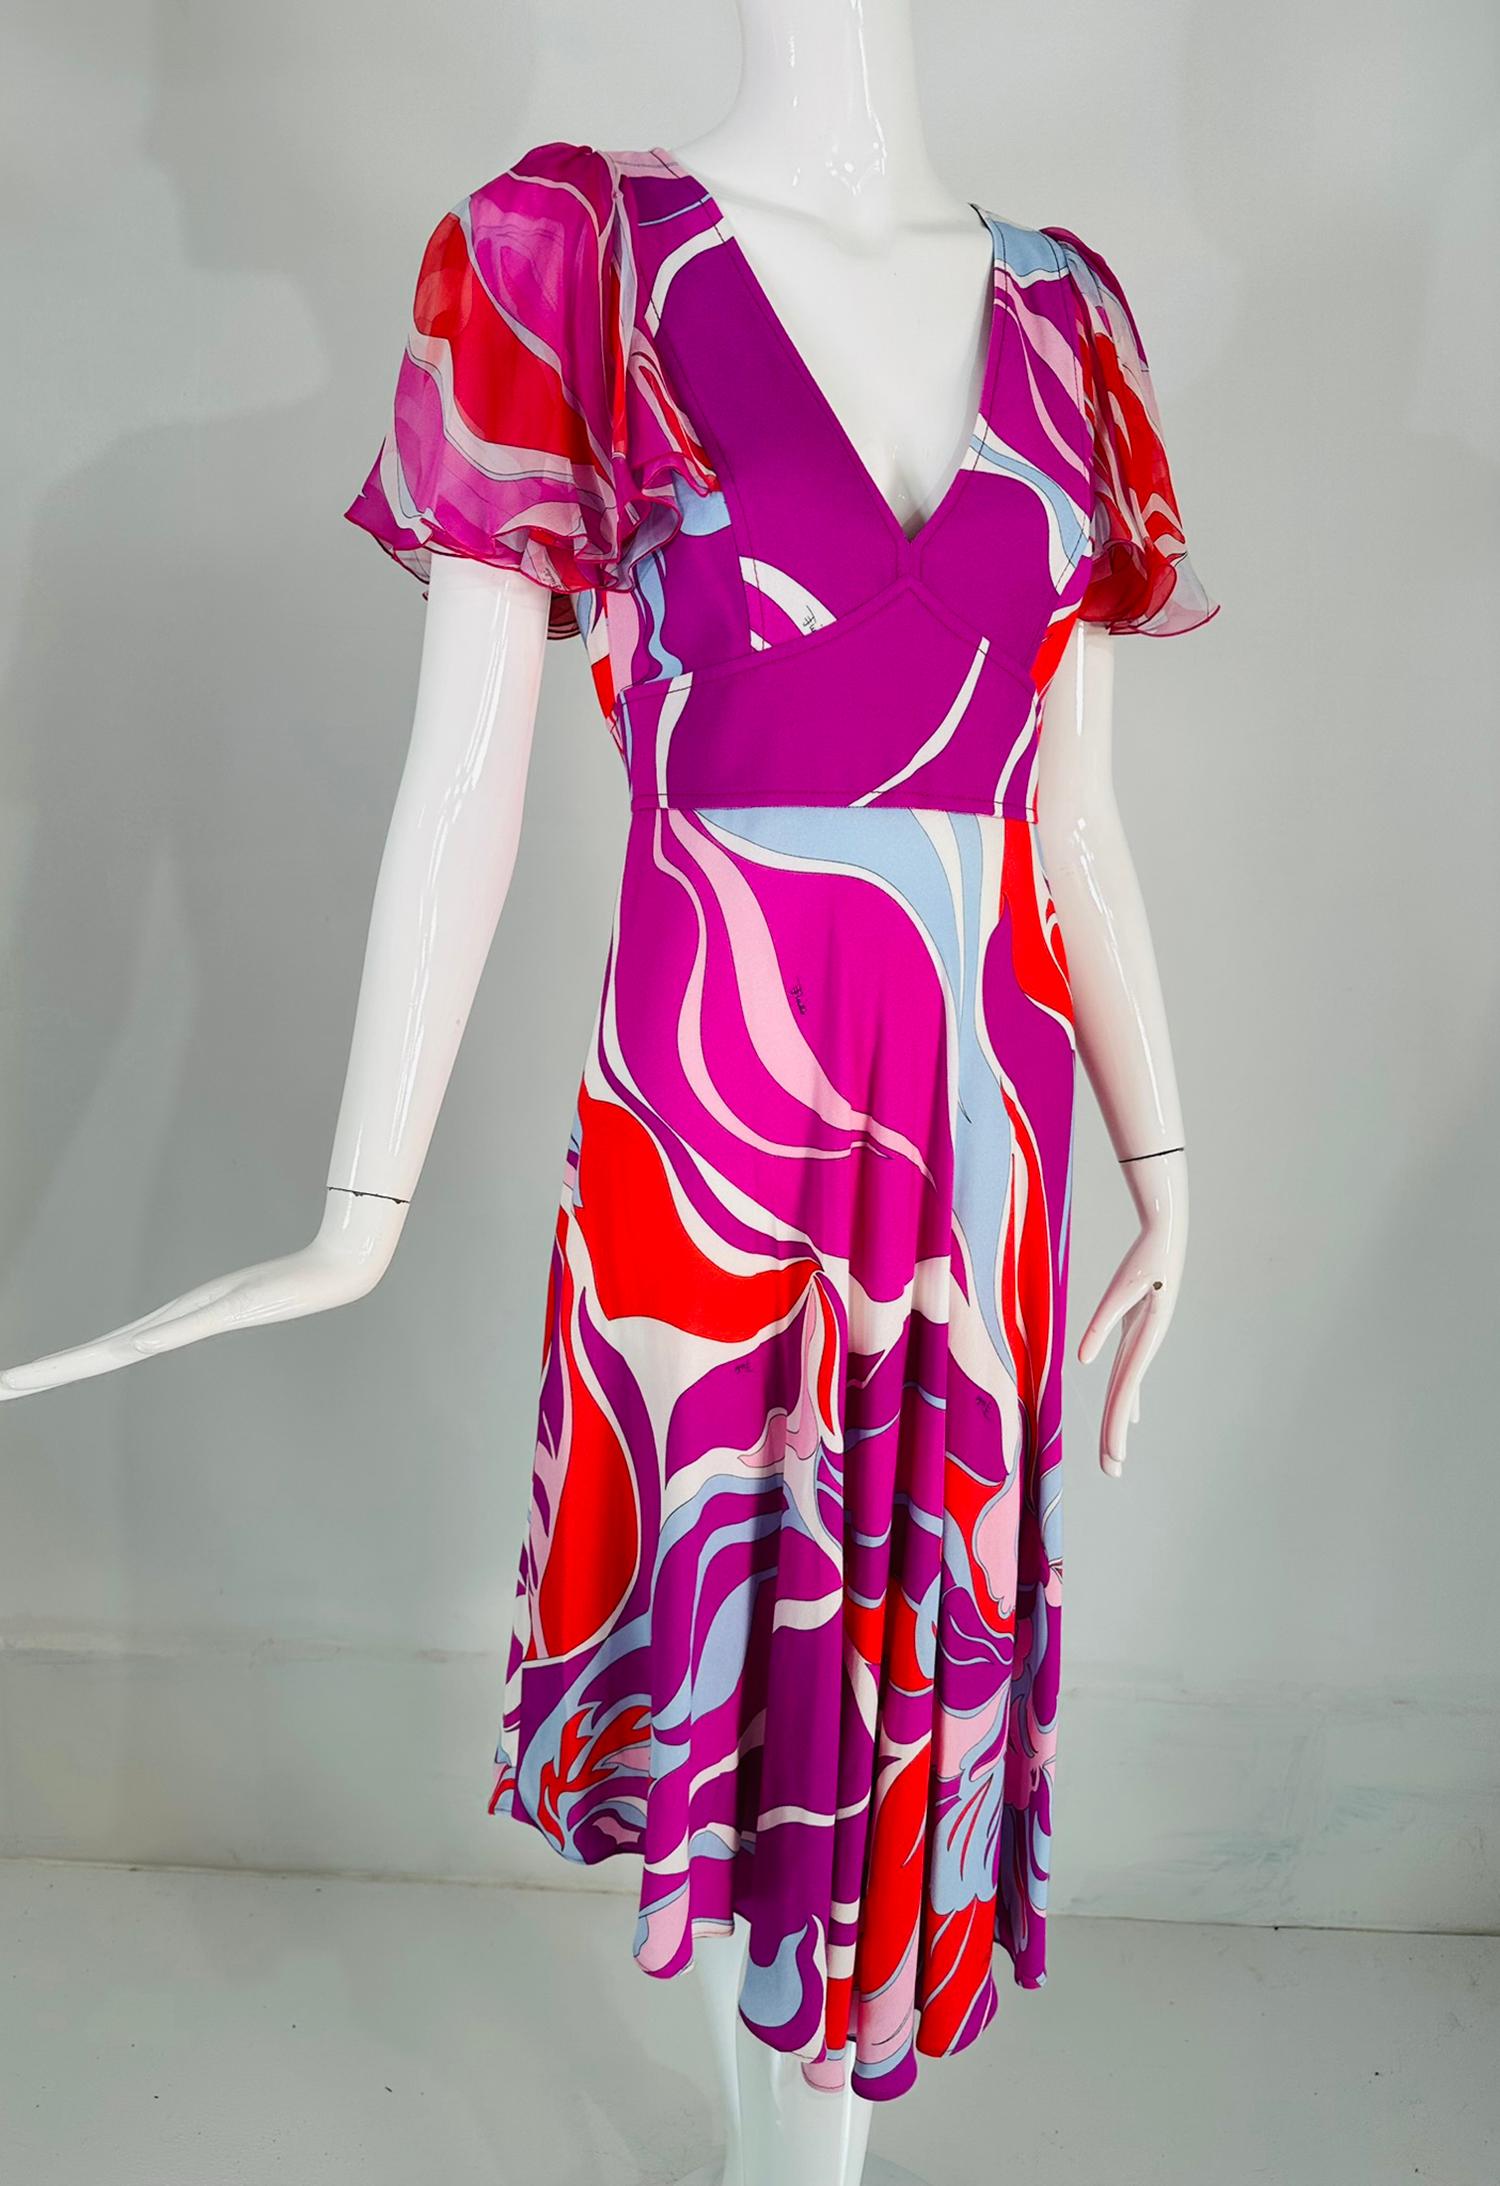 Emilio Pucci V-Ausschnitt Rüsche Chiffon Ärmel Schrägschnitt asymmetrischer Saum Rock Kleid markiert Größe 6US. Leuchtend pinkes, orangefarbenes, zartes, blassblaues und weißes Kleid mit tailliertem Mieder und schräg geschnittenem Rock, der vorne